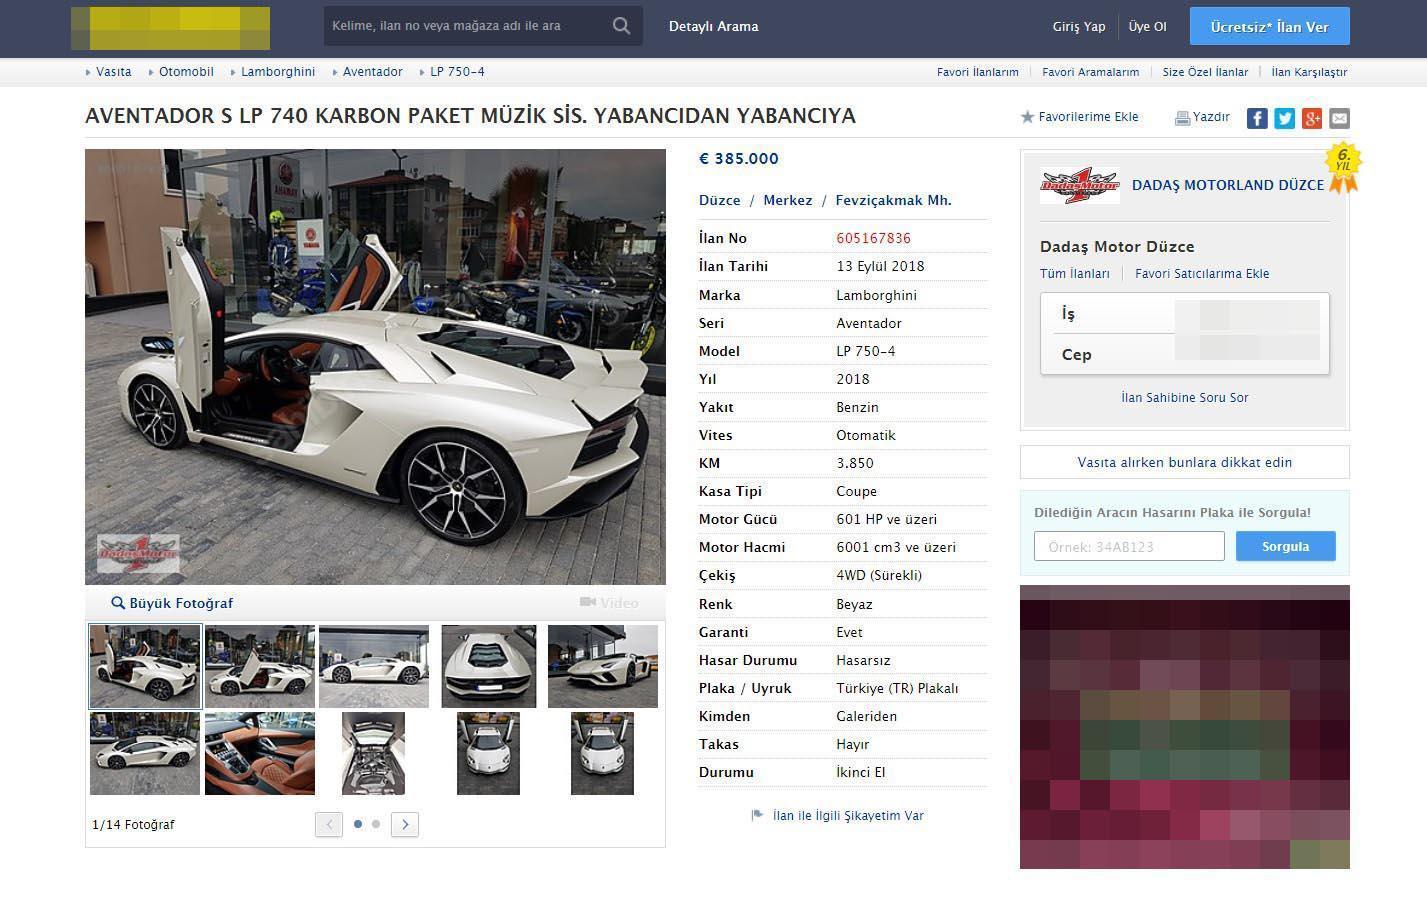 Kenan Sofuoğlu’nun, Lamborghini marka otomobili satışa çıktı